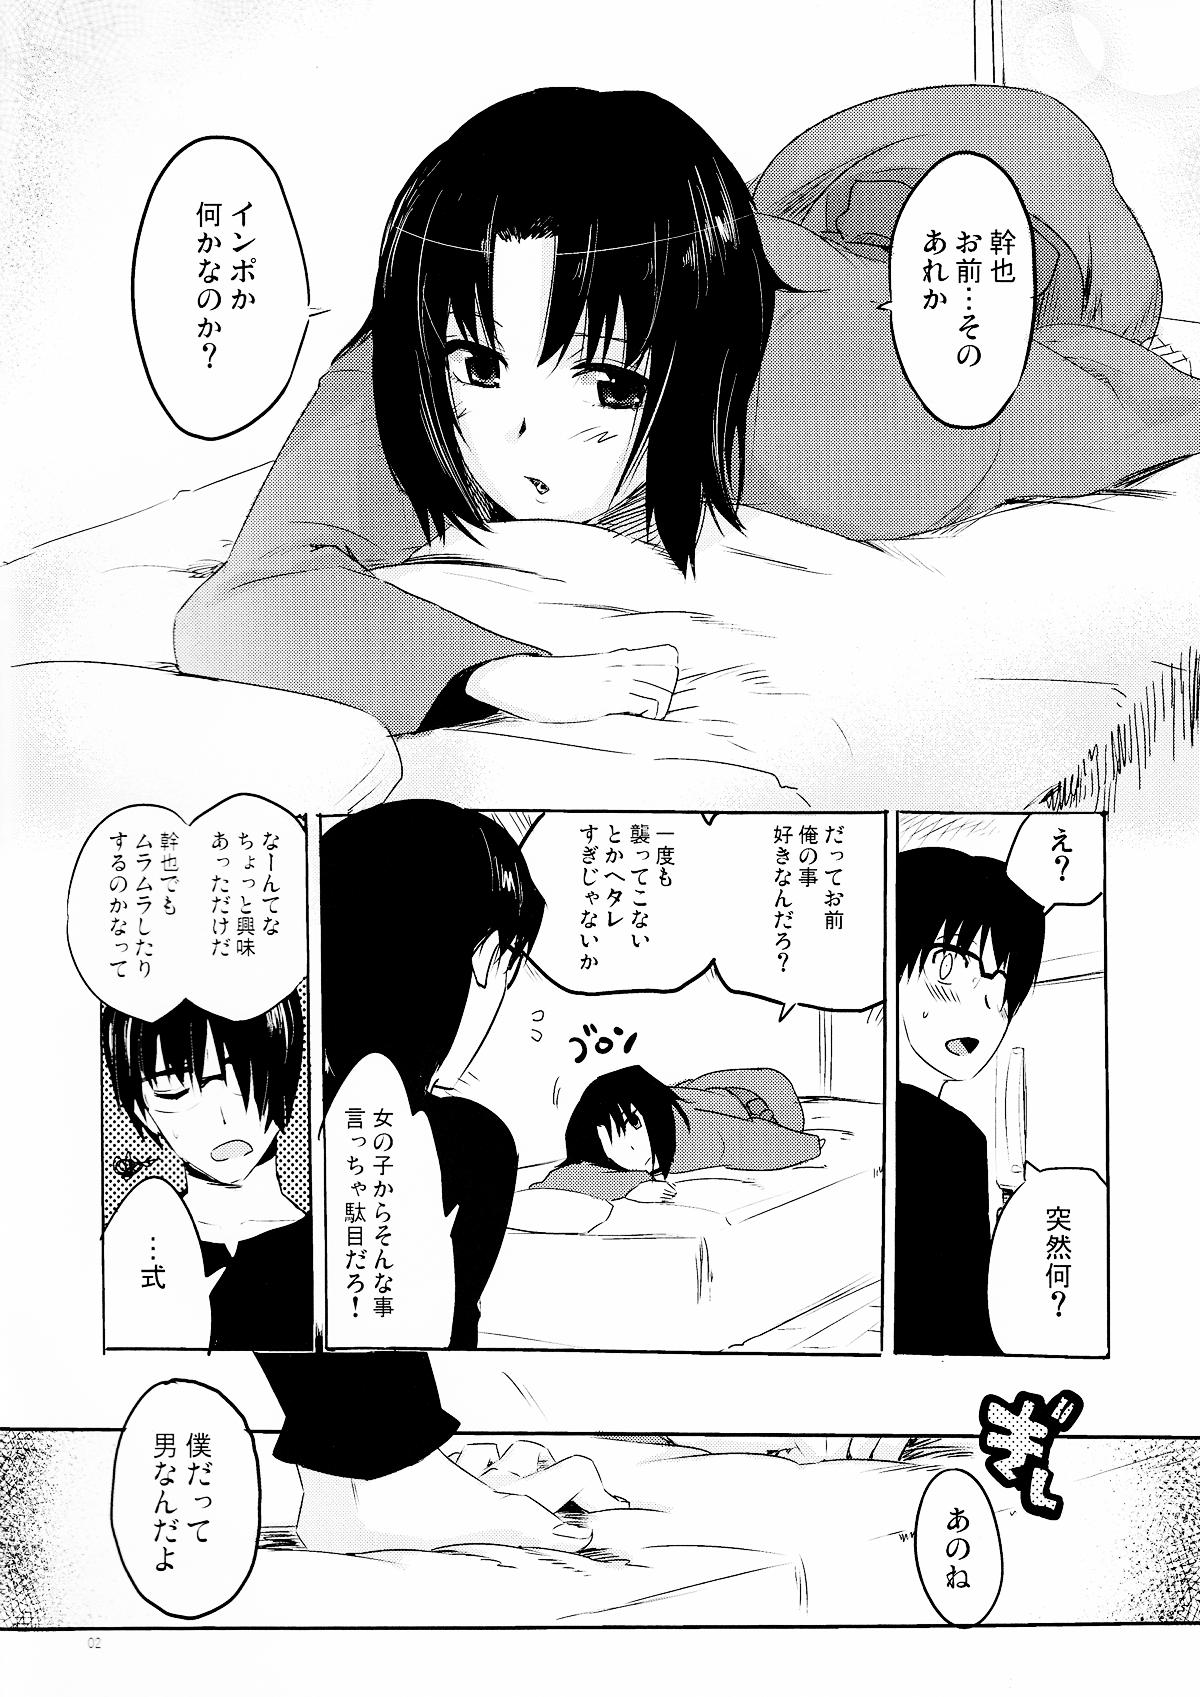 Petite Teenager Furimawasareru Hitotachi - Kara no kyoukai Banho - Page 2